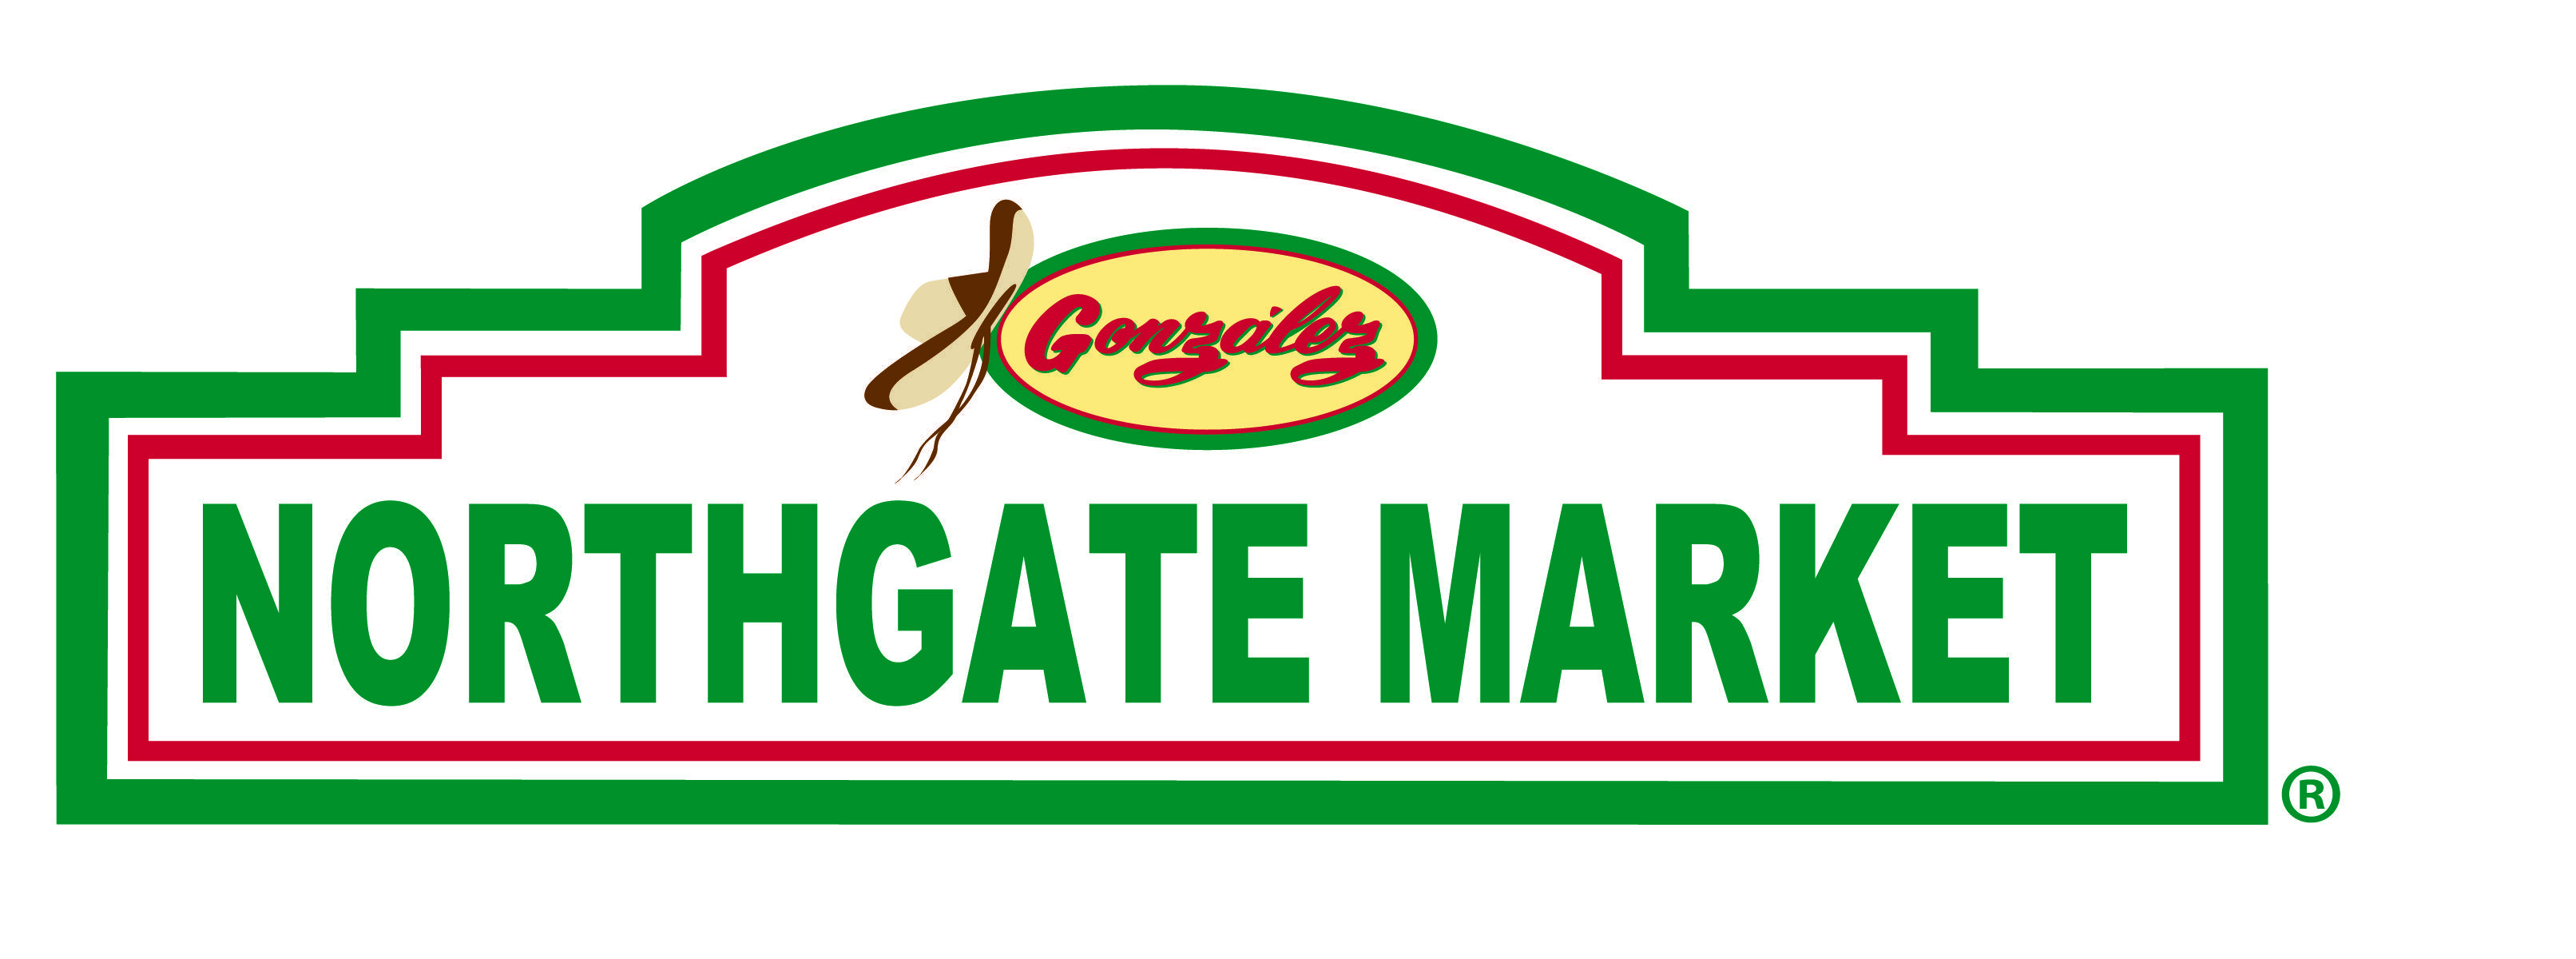 Northgate Logo - Susan G. Komen San Diego | Northgate González Market & UCSD create ...